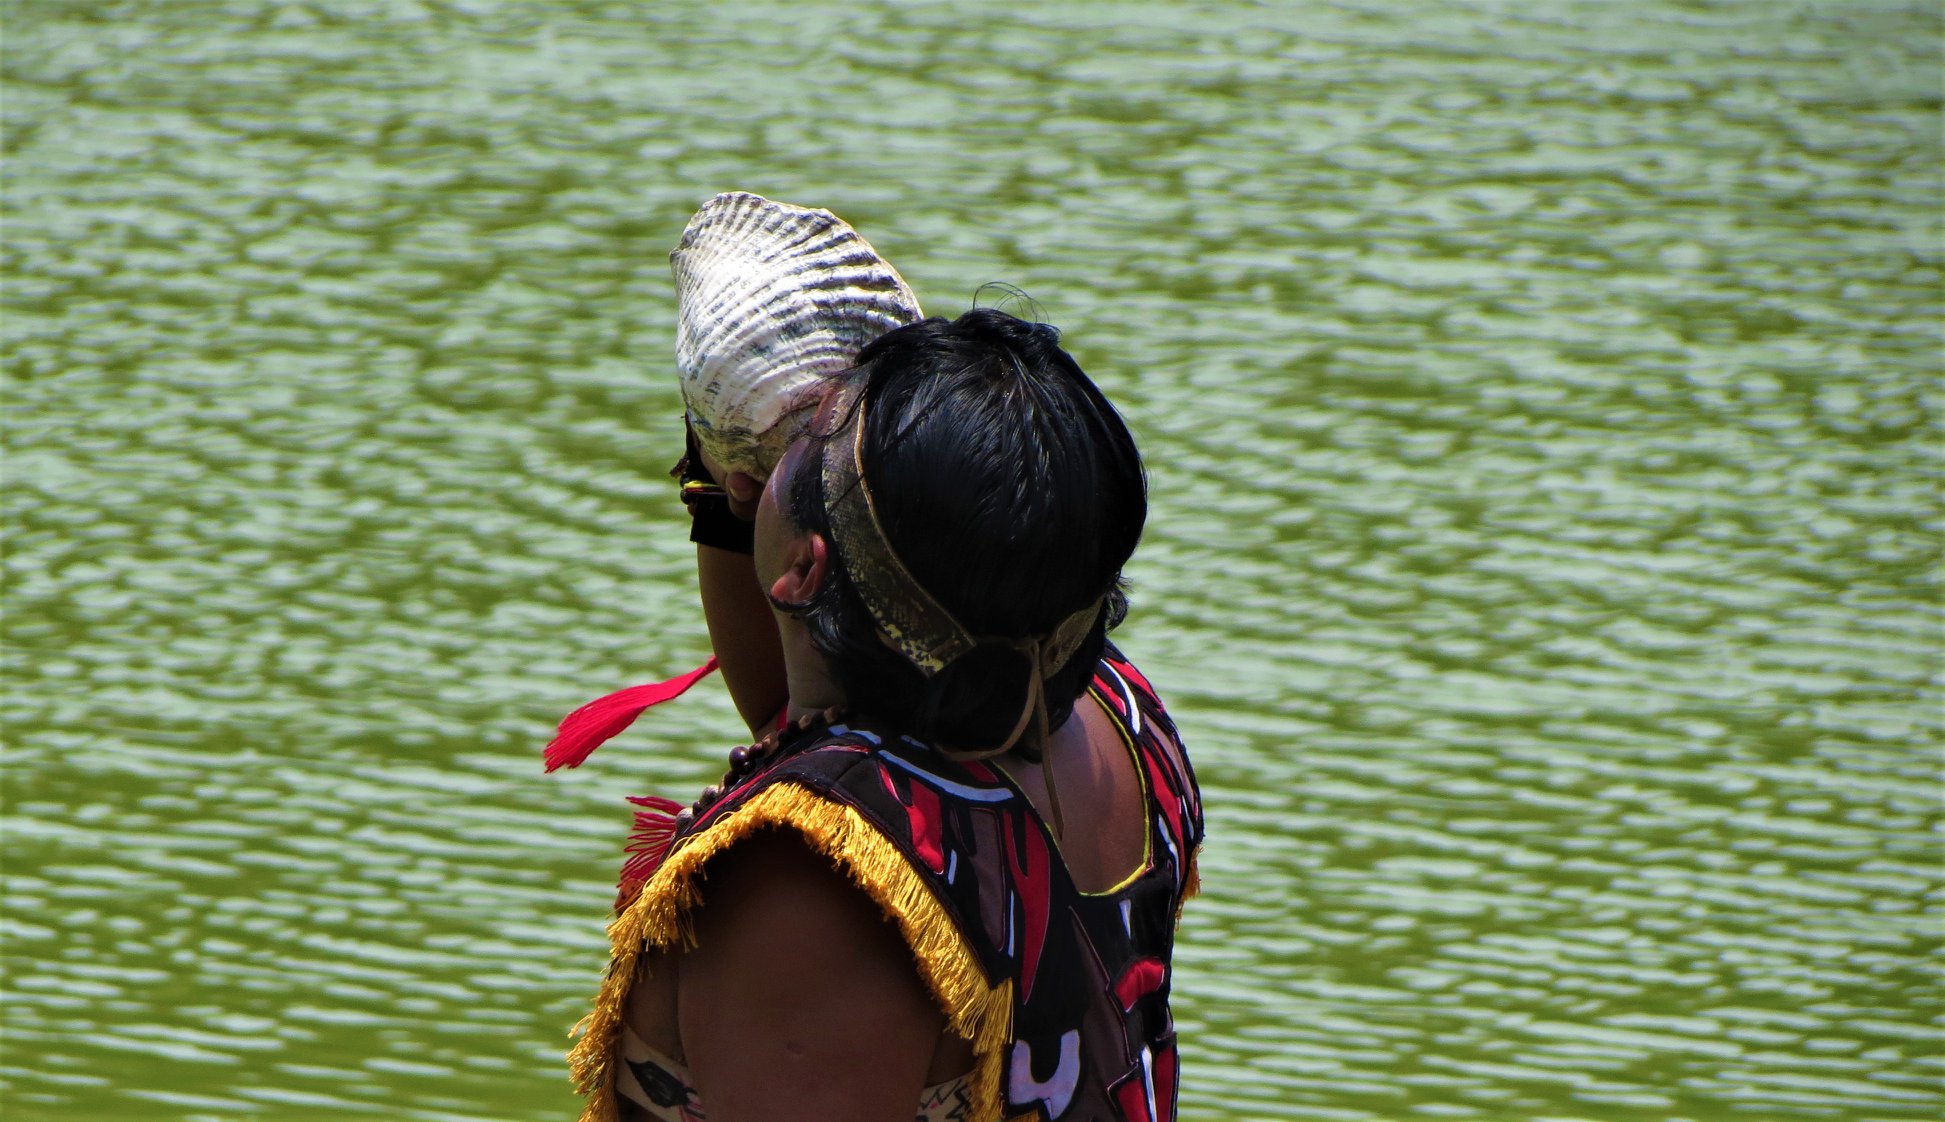 pueblos indigenas